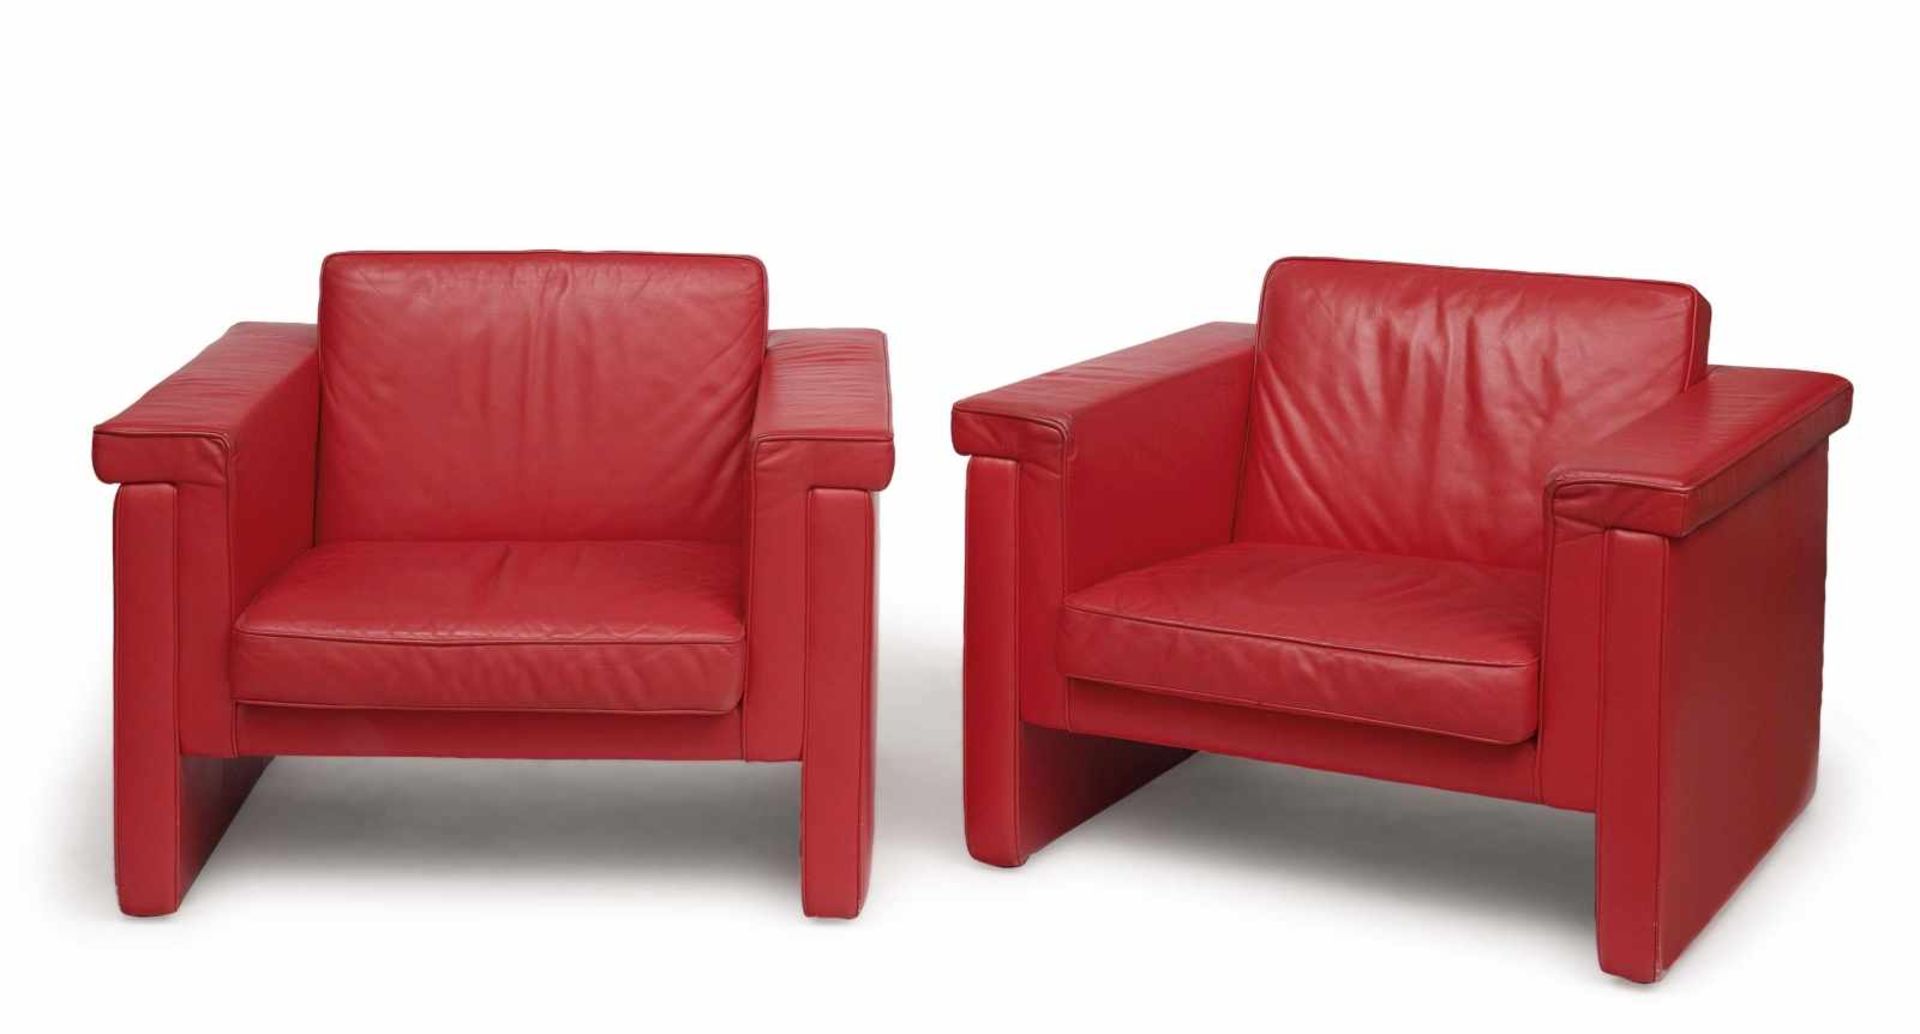 Vier Armlehnsessel wohl Italien, 1980er Jahre Rotes Leder. Lose Sitzkissen. Gebrauchsspuren. 60 x 88